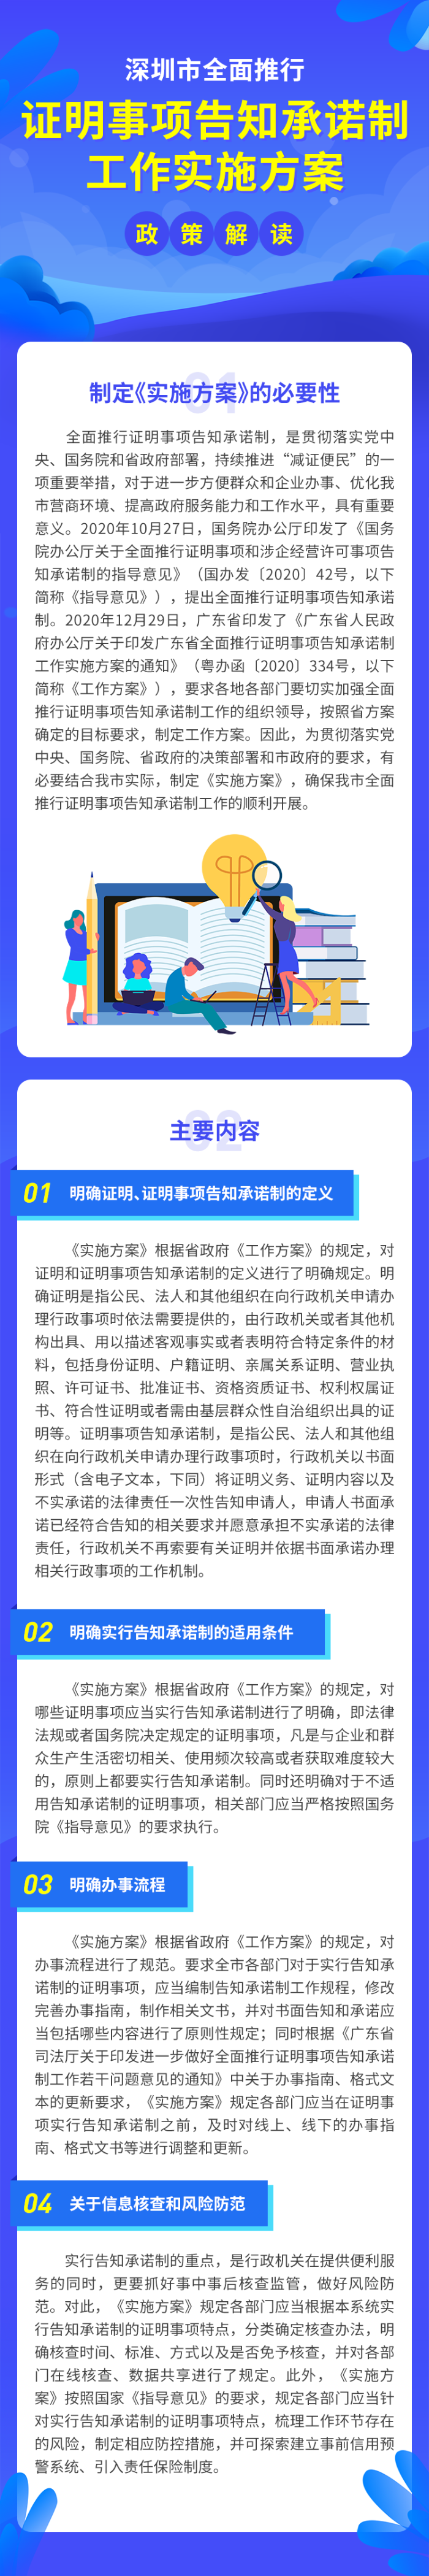 关于《深圳市全面推行证明事项告知承诺制工作实施方案》的政策解读.png